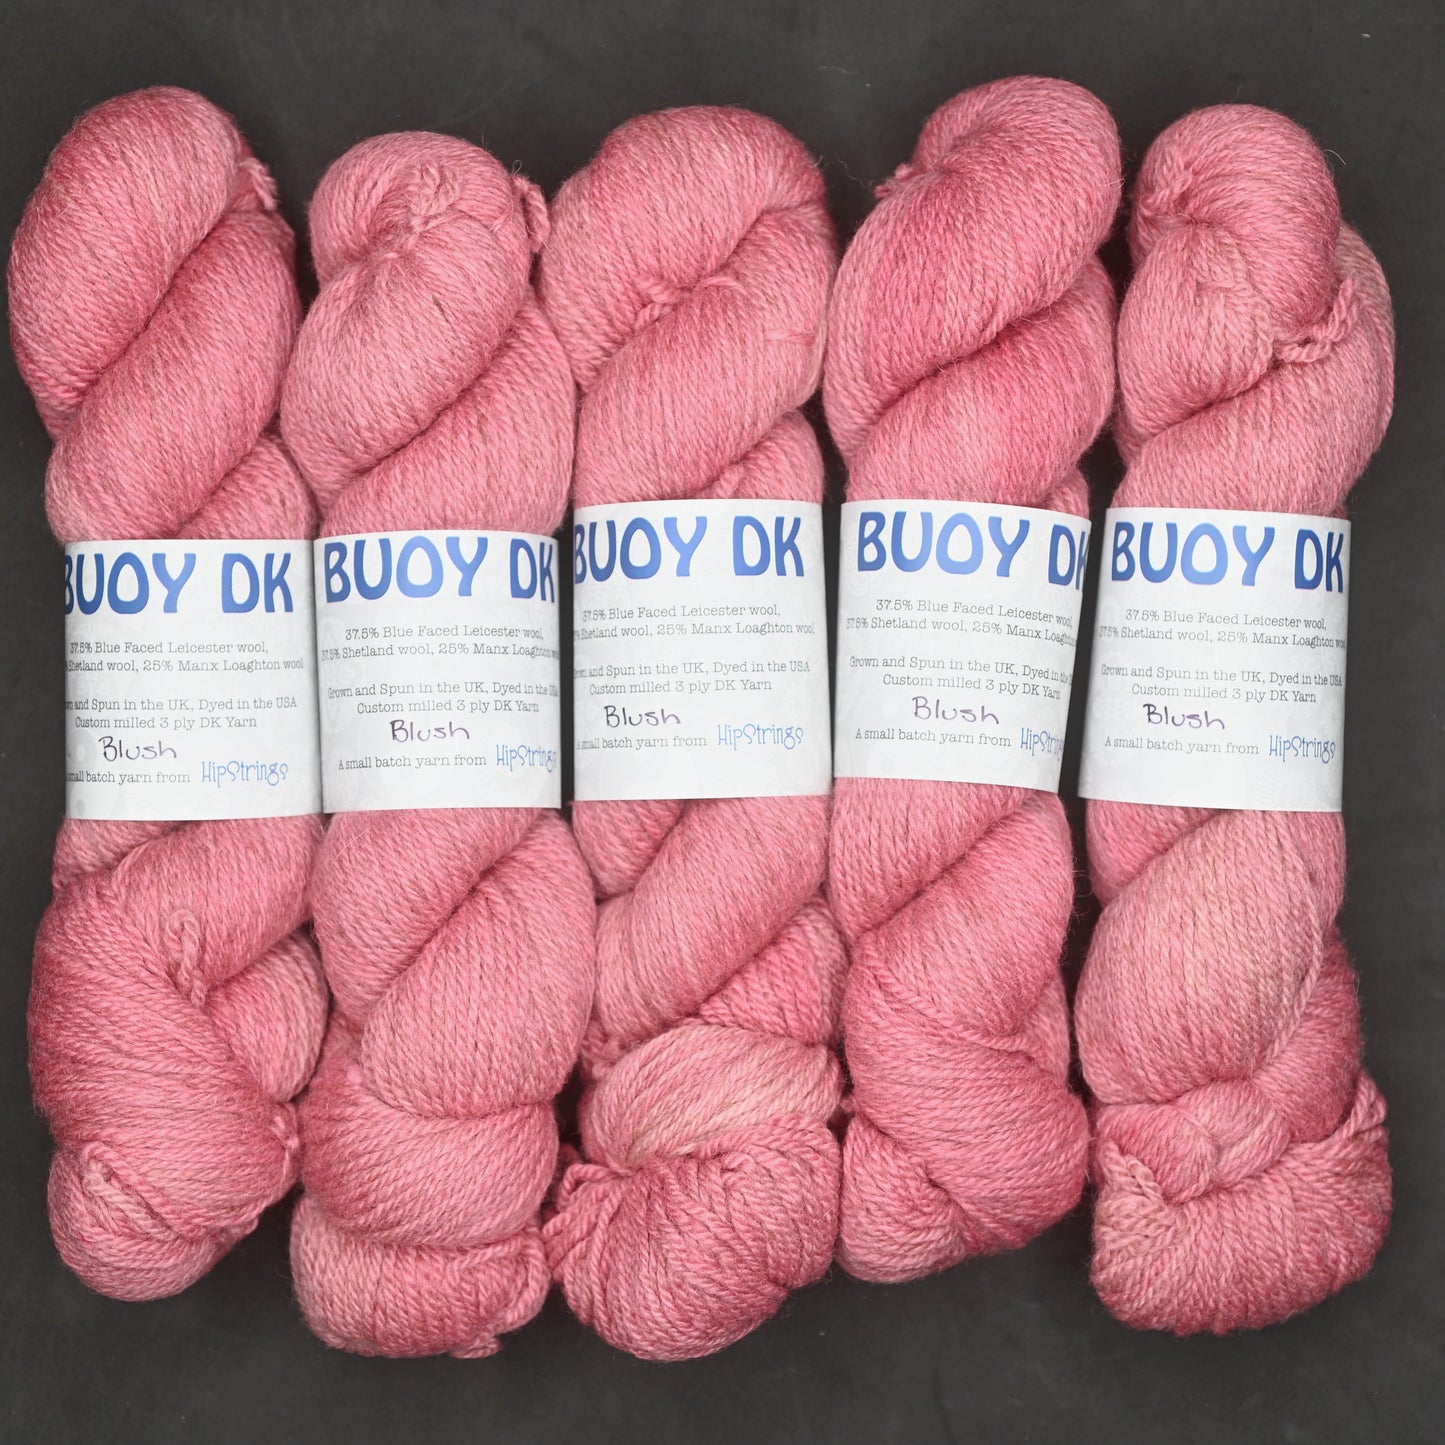 Blush on Hand Dyed Buoy DK wool yarn (BFL/Shetland/Manx) - 100 g